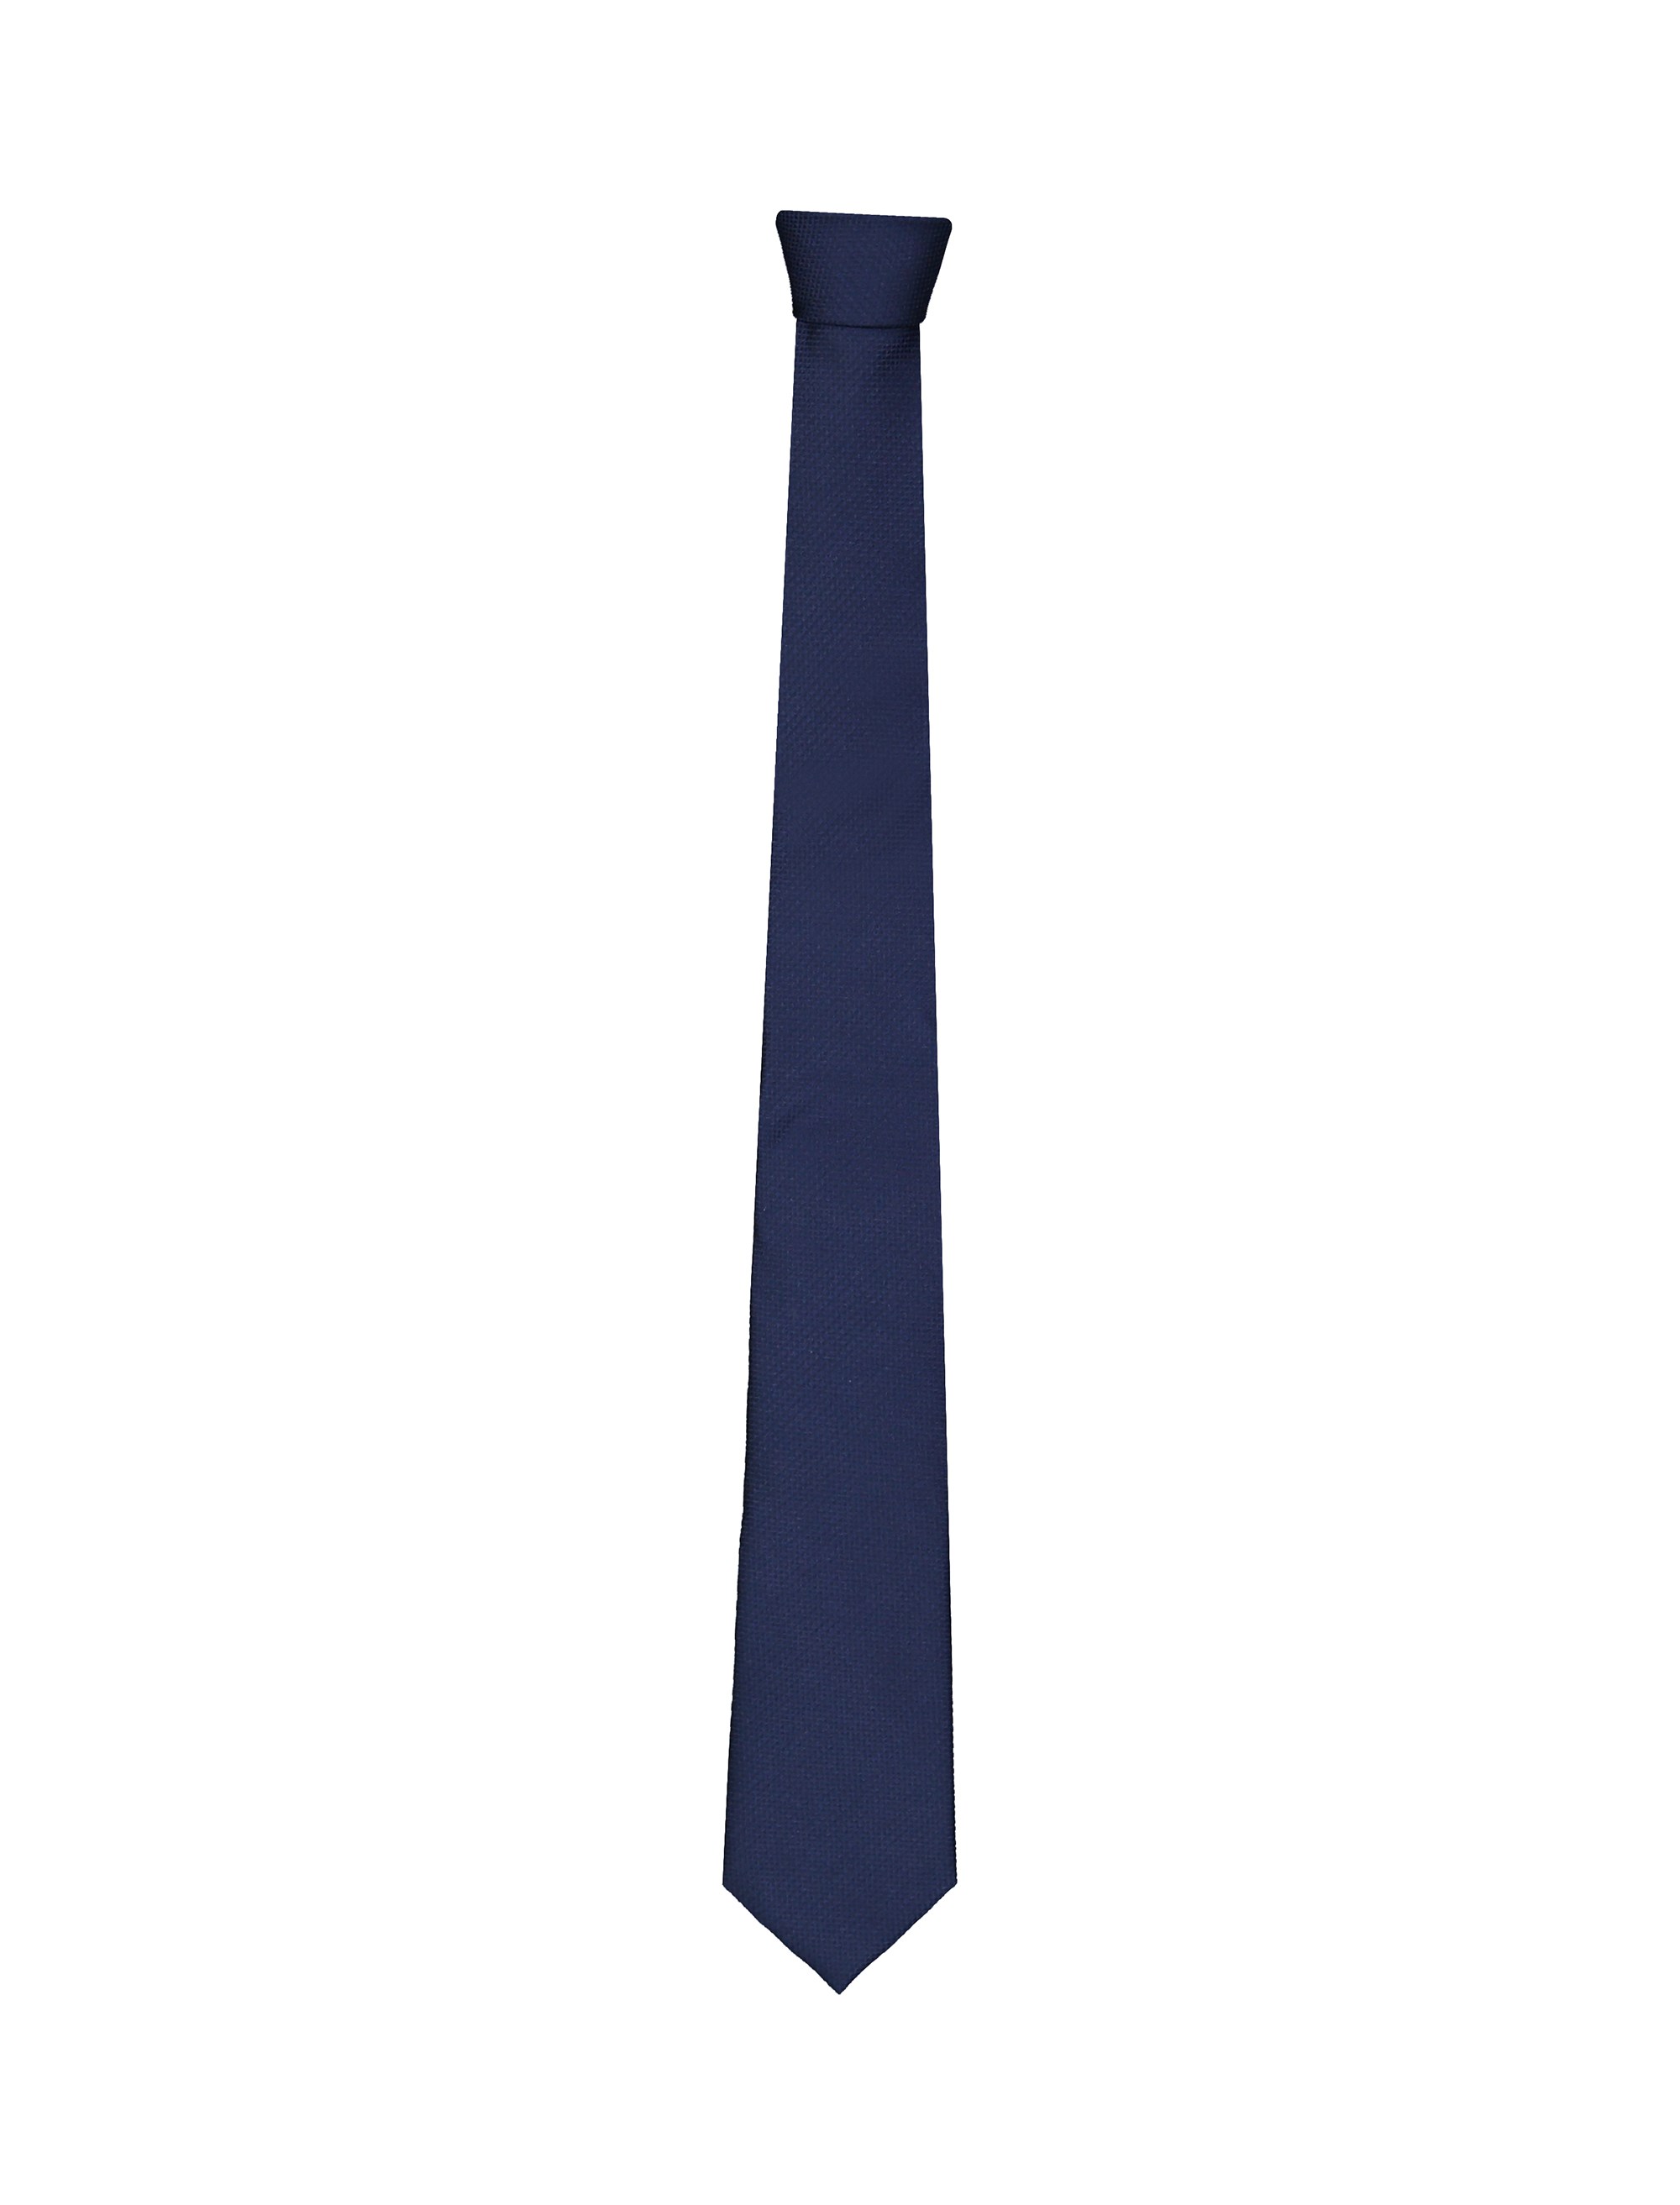 کراوات ابریشمی طرح دار مردانه - یوپیم تک سایز - سرمه اي - 1